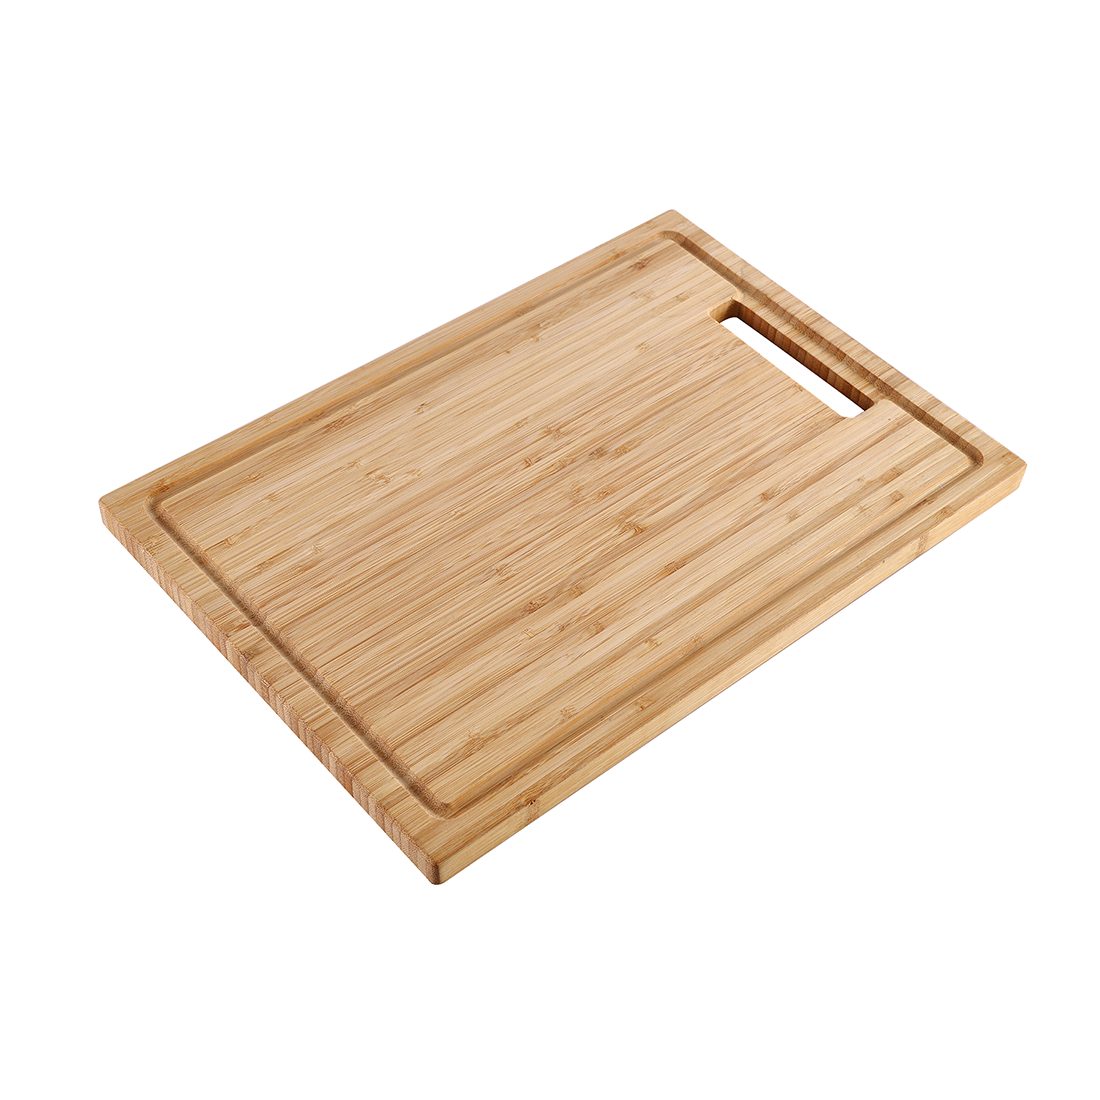 DAX Wooden Cutting Board for DAX-WS3019-R10 / DAX-WS3321-R10 / DAX-NB3018-R10 / DAX-NB2318-R10 / DAX-NB3218-R10 (CUT-WSR10)